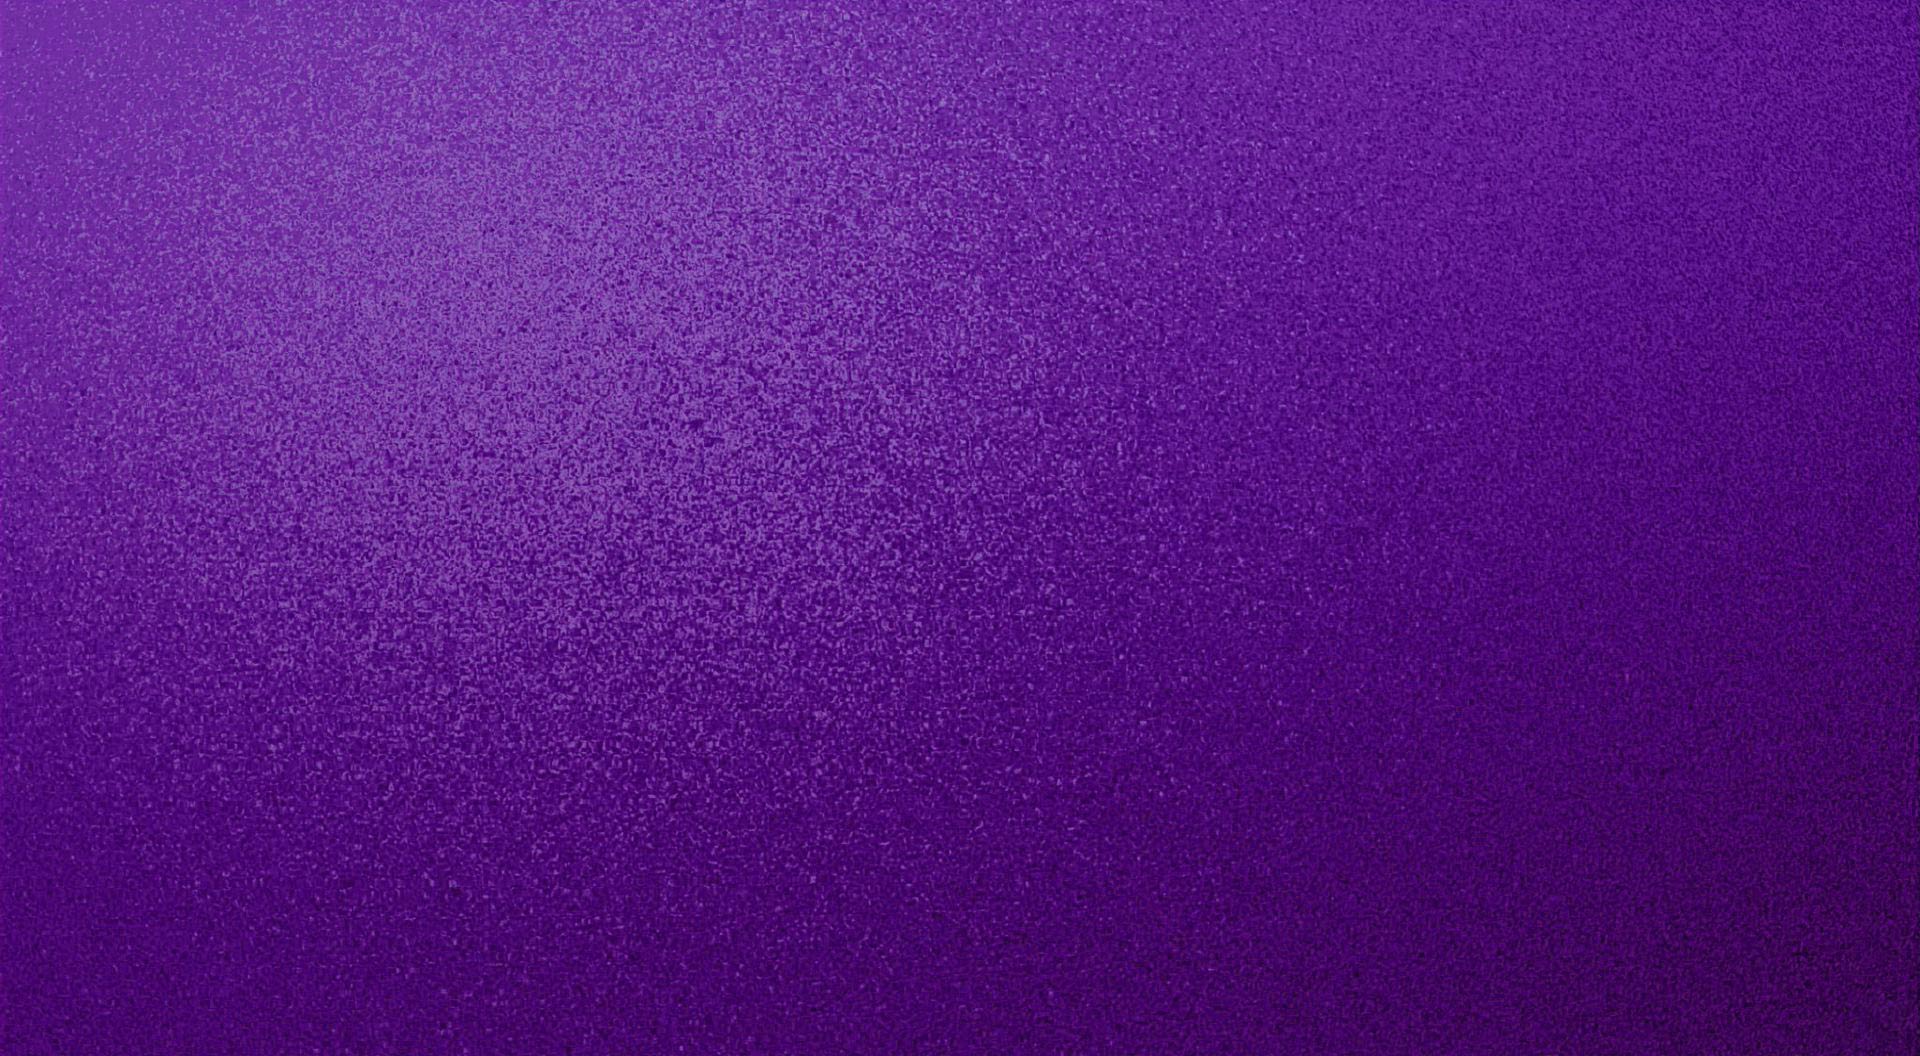 Violet purple textured speckled desktop background wallpaper for use 1920x1056